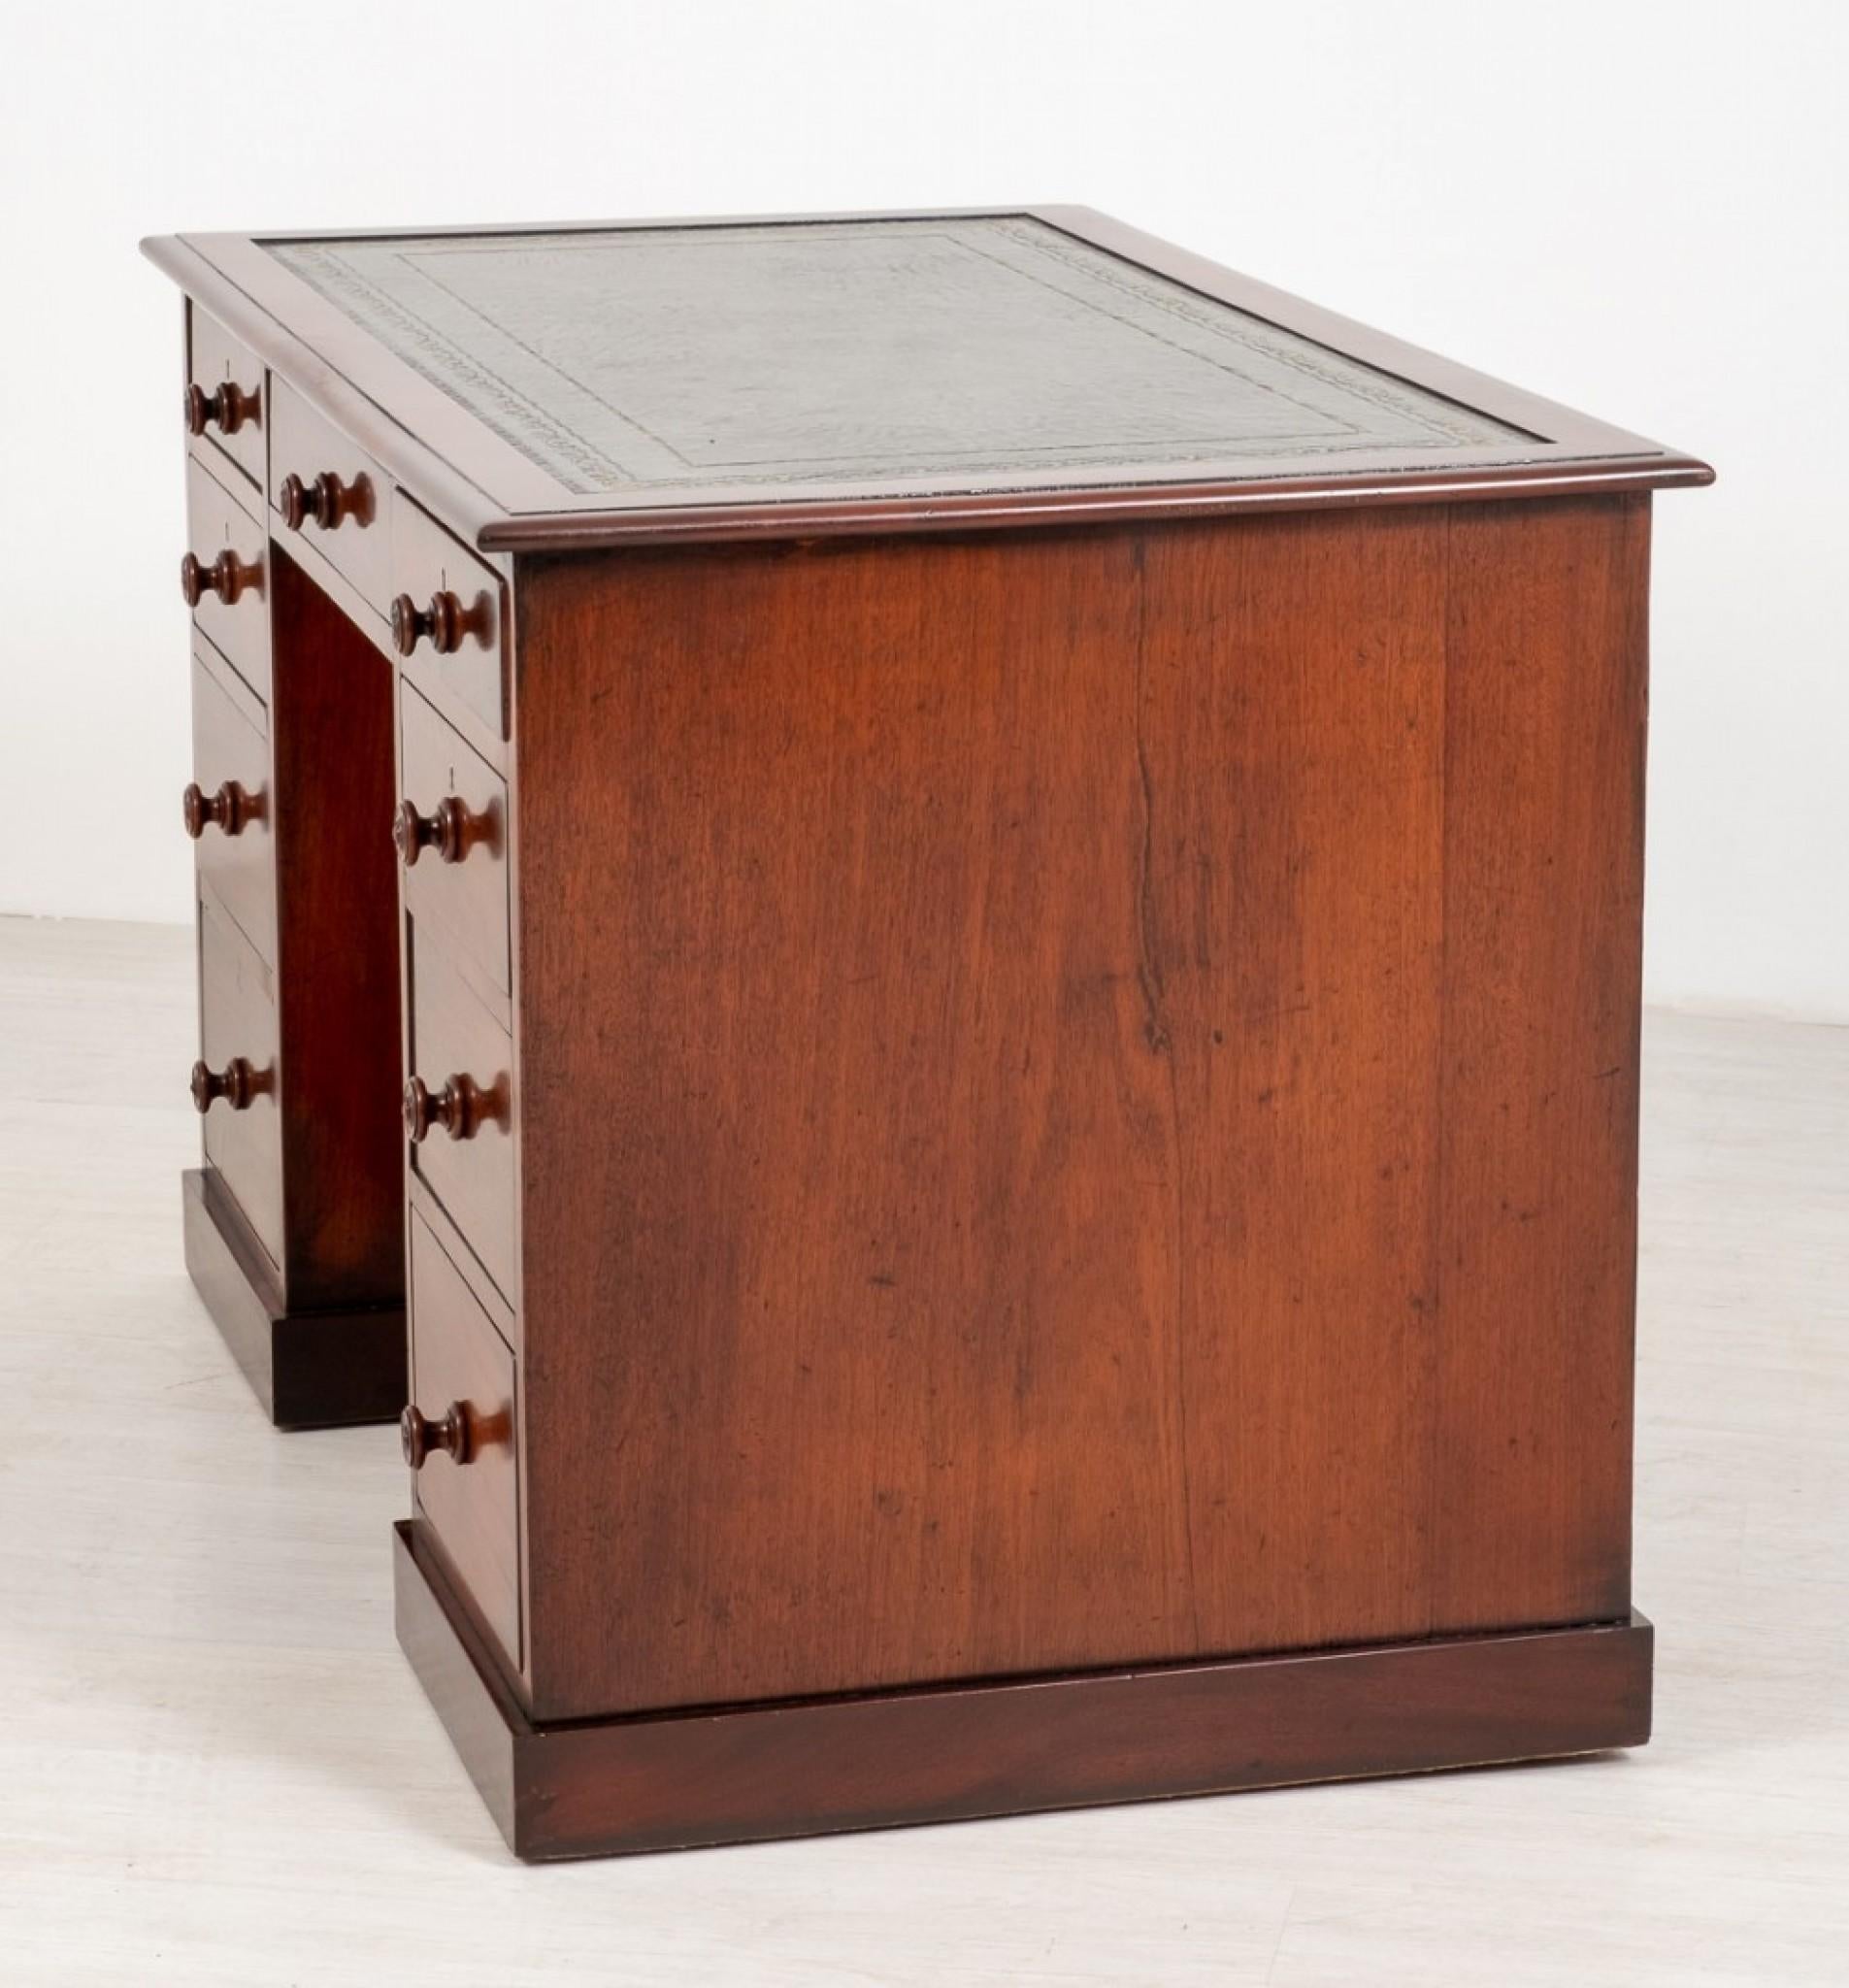 Viktorianischer Mahagoni-Sockel-Schreibtisch.
Dieser Mahagoni-Schreibtisch verfügt über 9 abgestufte Schubladen mit gedrechselten Knöpfen.
Die Oberseite des Schreibtisches hat eine Schreibfläche aus grünem Leder (Ersatz) mit handgefertigter